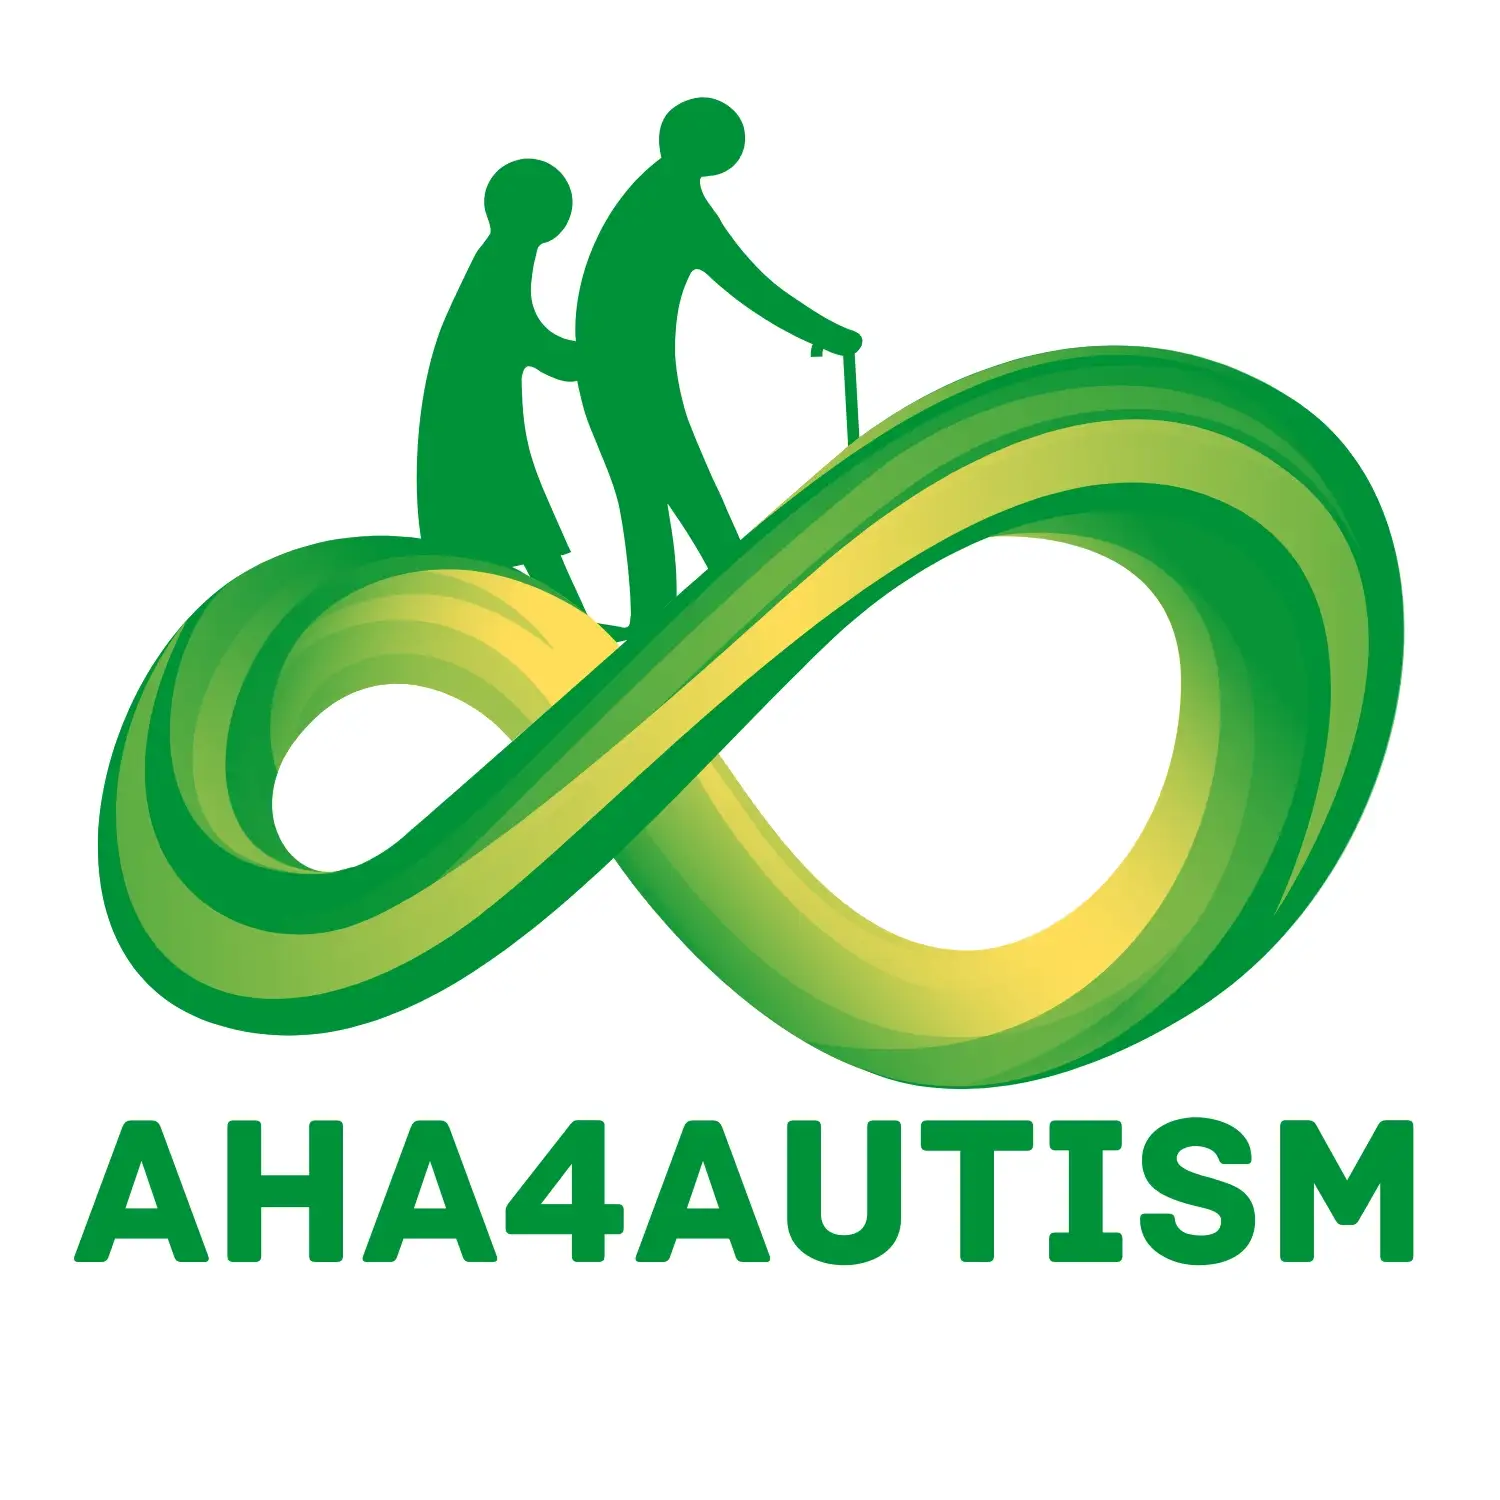 aha4autism - logo